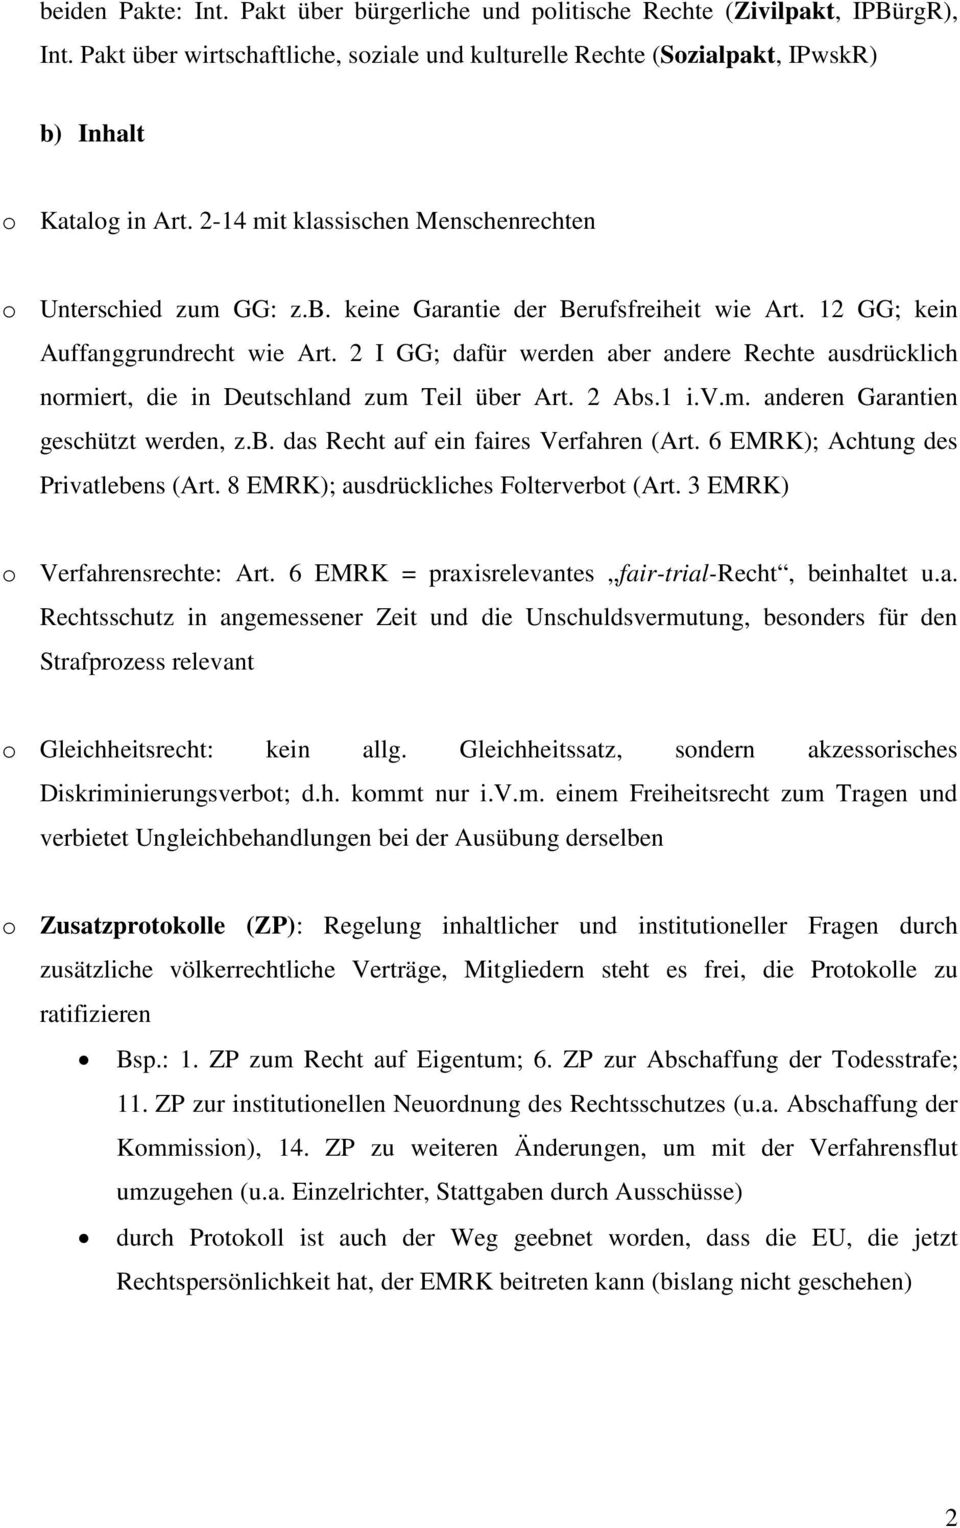 2 I GG; dafür werden aber andere Rechte ausdrücklich normiert, die in Deutschland zum Teil über Art. 2 Abs.1 i.v.m. anderen Garantien geschützt werden, z.b. das Recht auf ein faires Verfahren (Art.